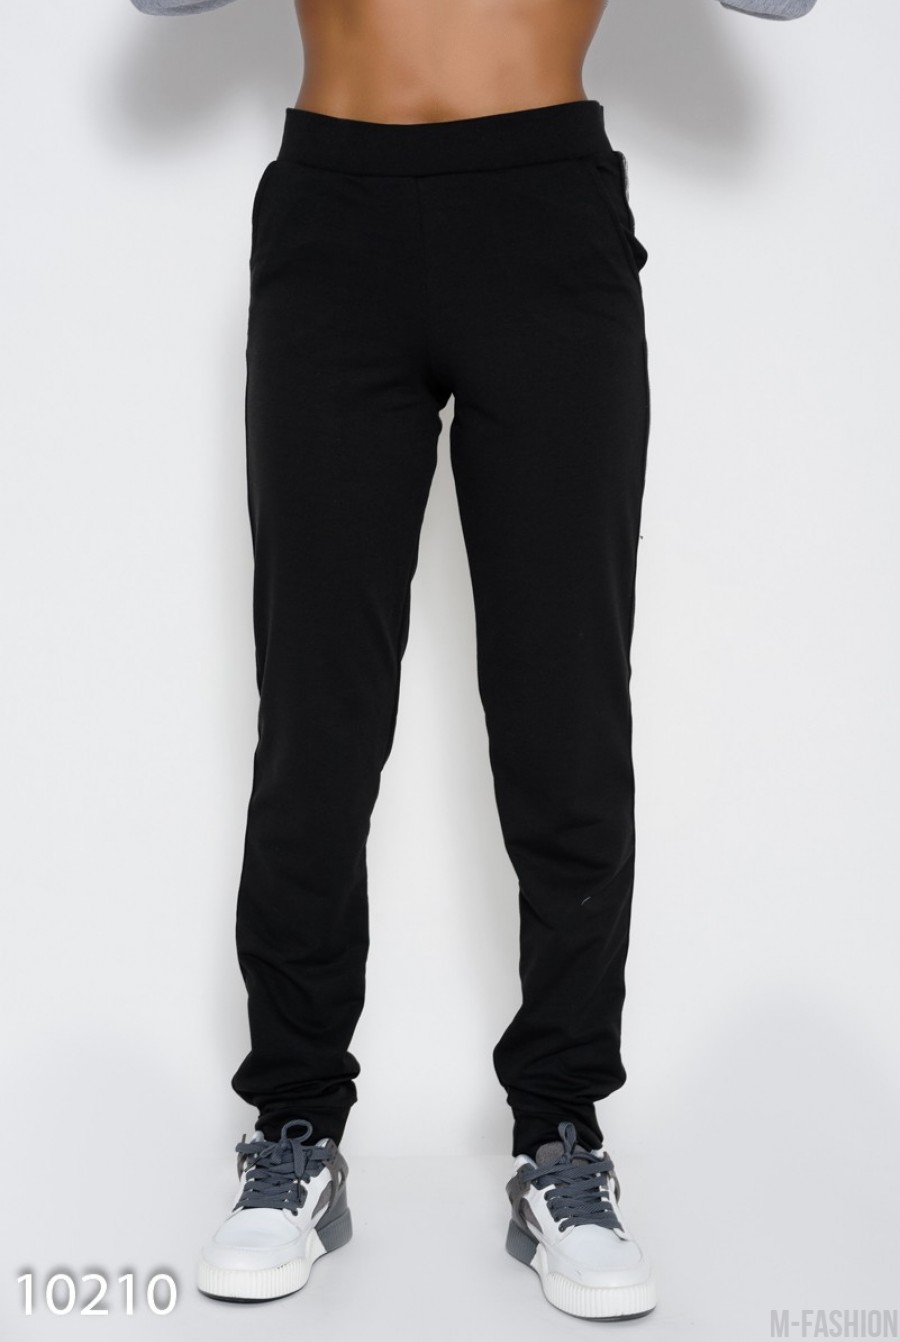 Черные трикотажный штаны с карманами и лампасами с люрексом - Фото 1